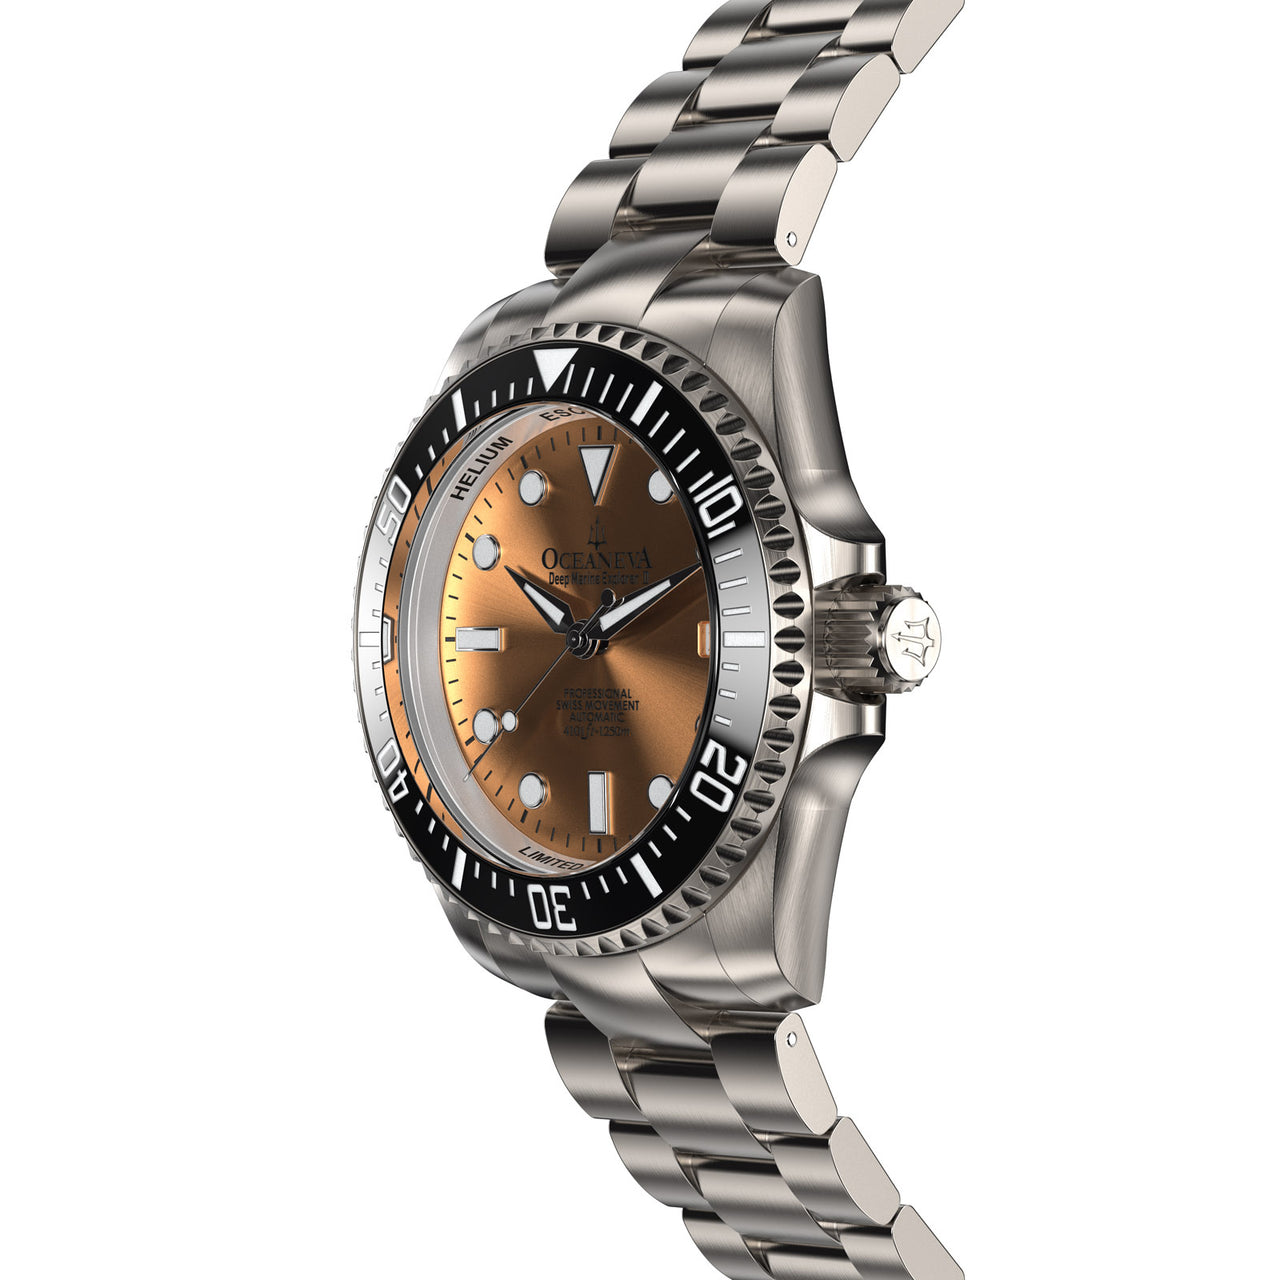 Oceaneva™ Men's Deep Marine Explorer II 1250M Titanium Watch Copper Burst Dial